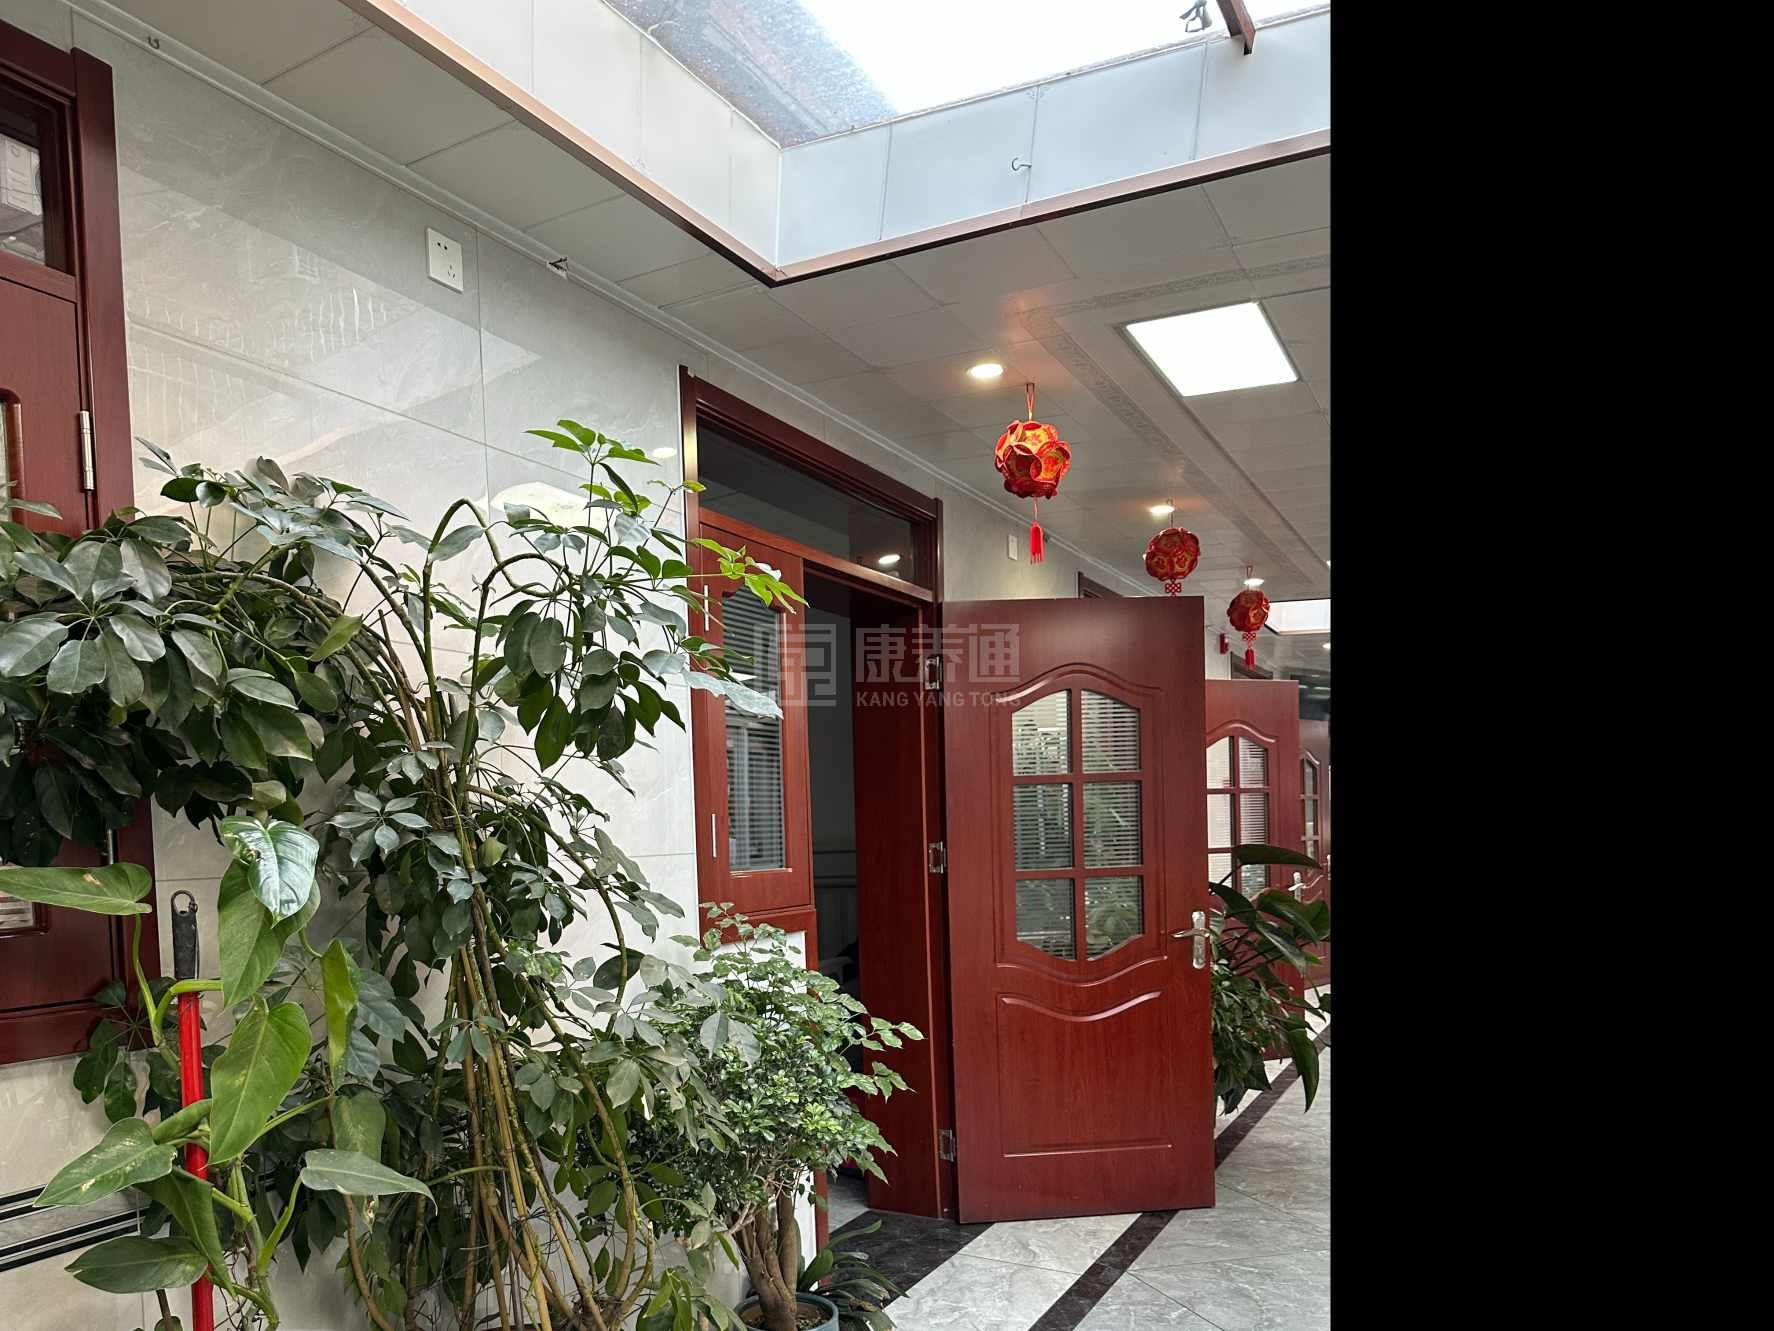 天津市红桥区益寿养老院环境图-阳台